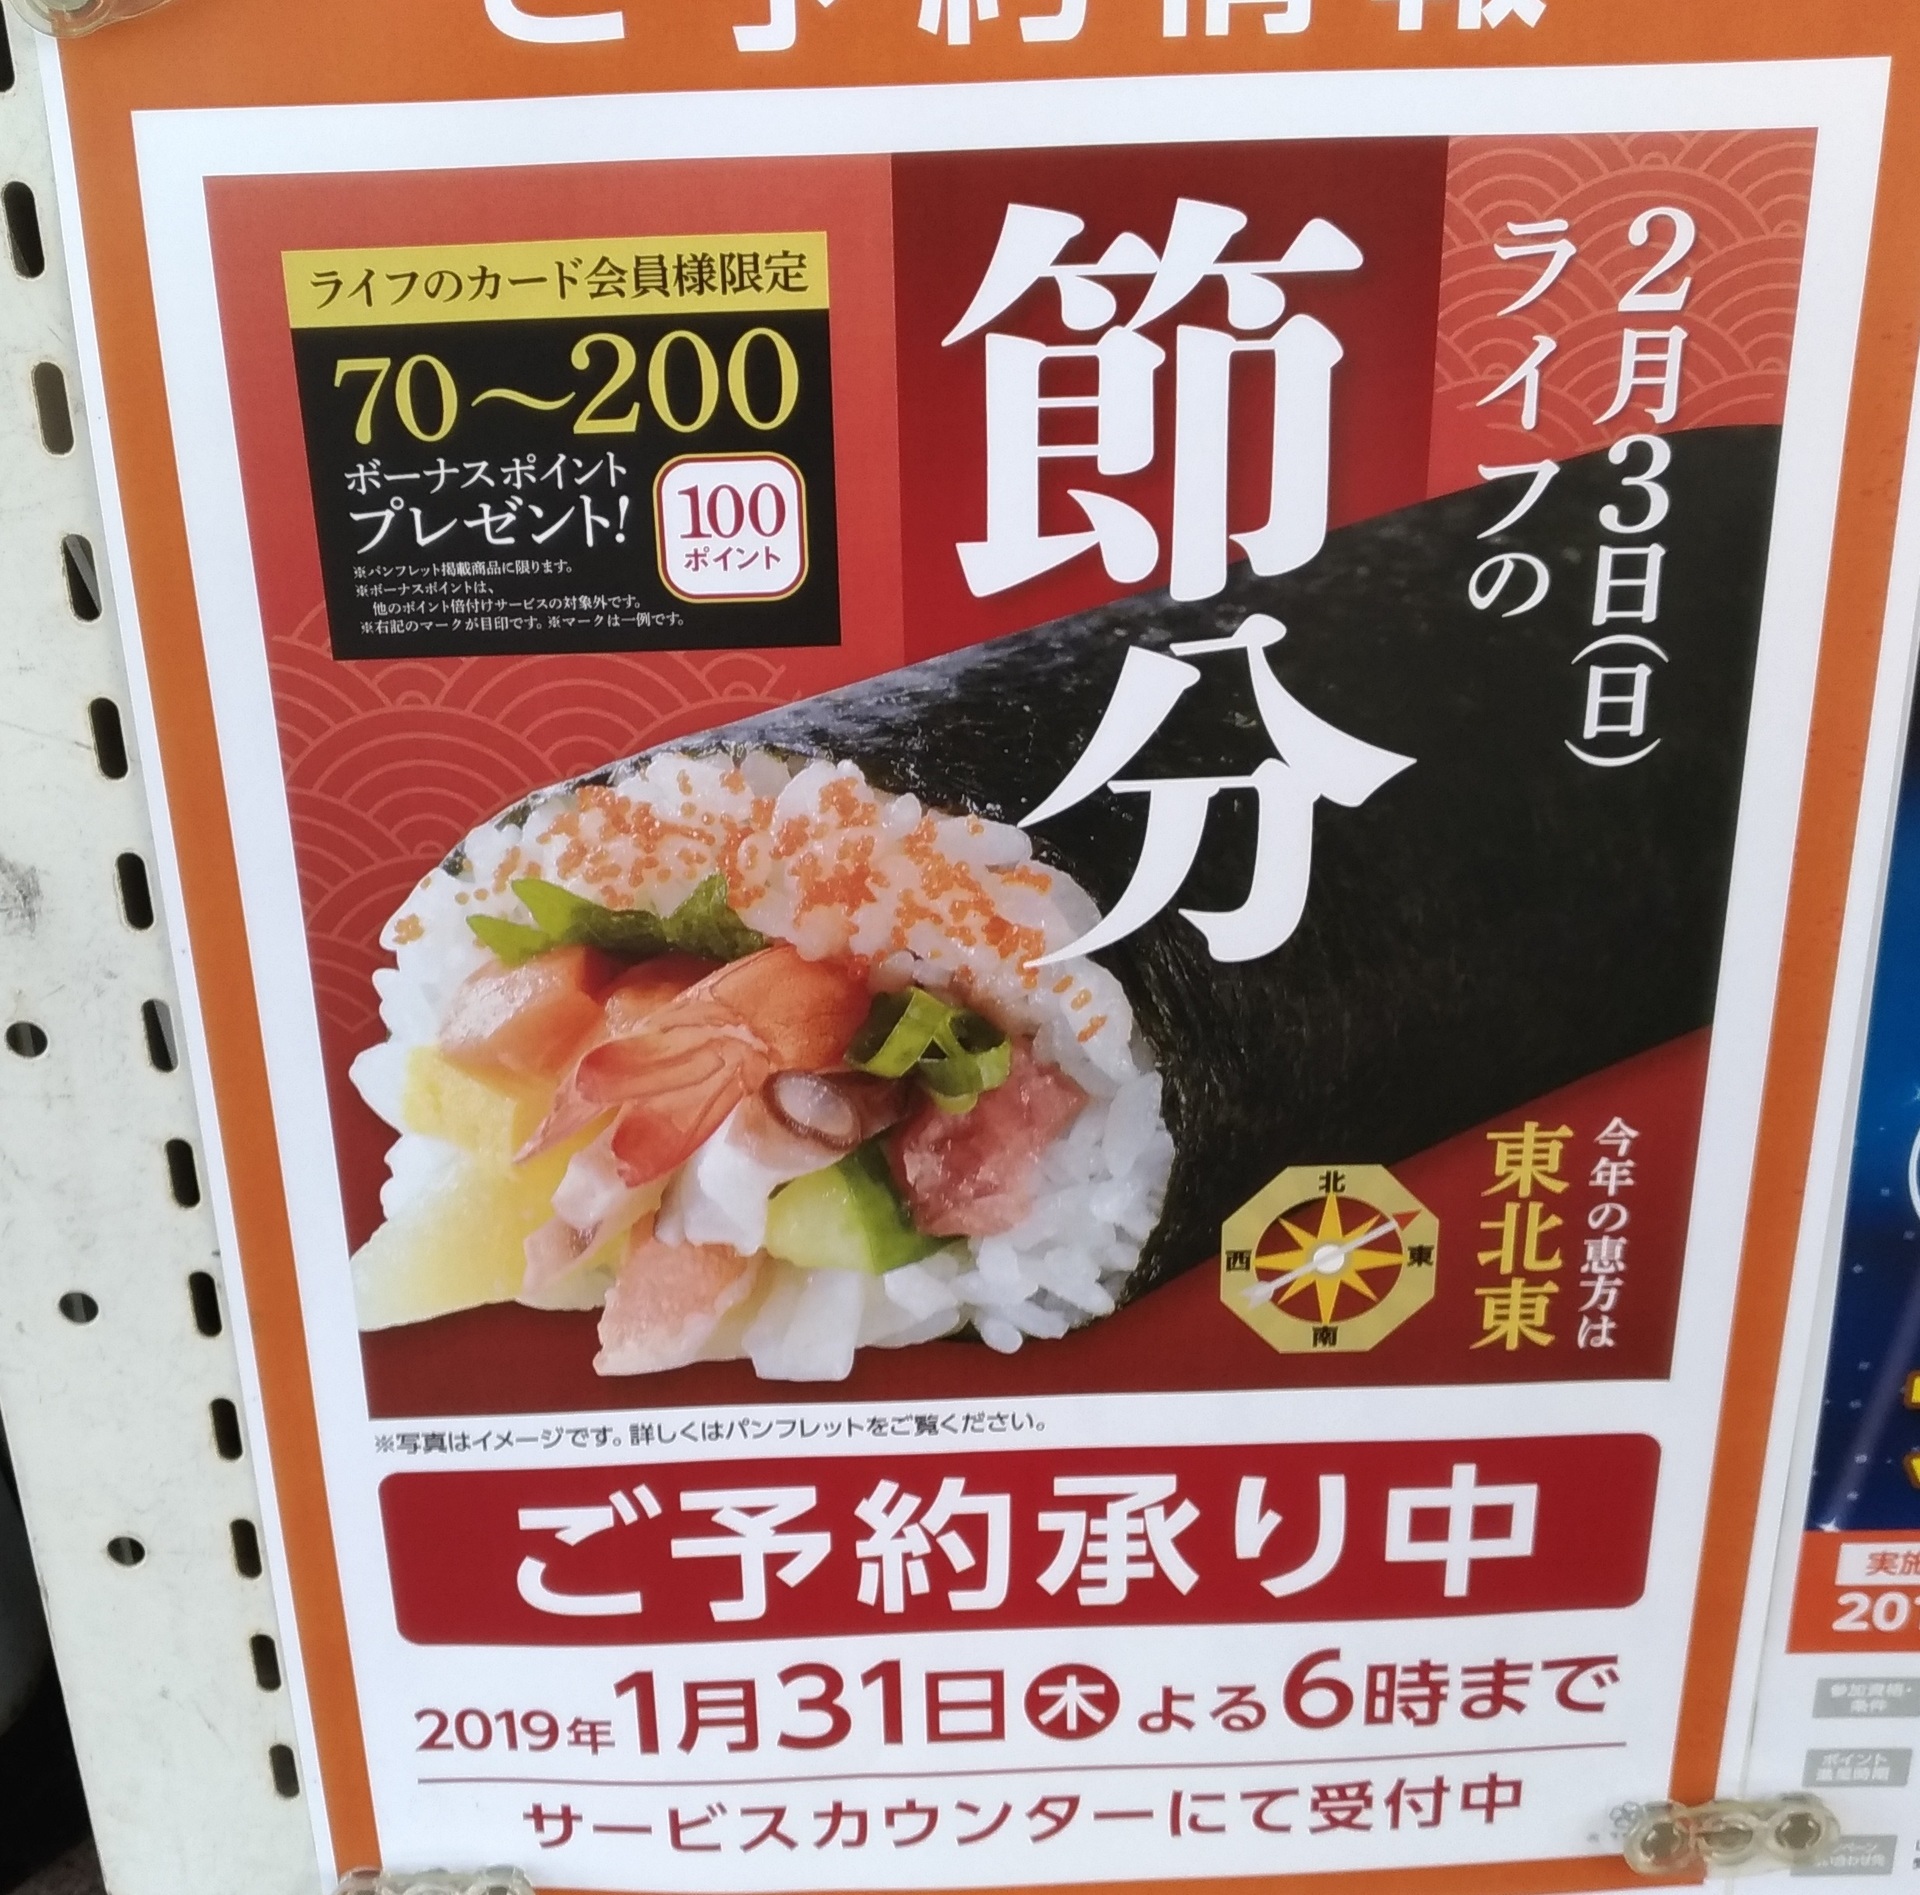 節分19予約 恵方巻きスーパーライフで季節のイベントに スーパーライフ 大阪おすすめお惣菜野菜をブログでポイントも